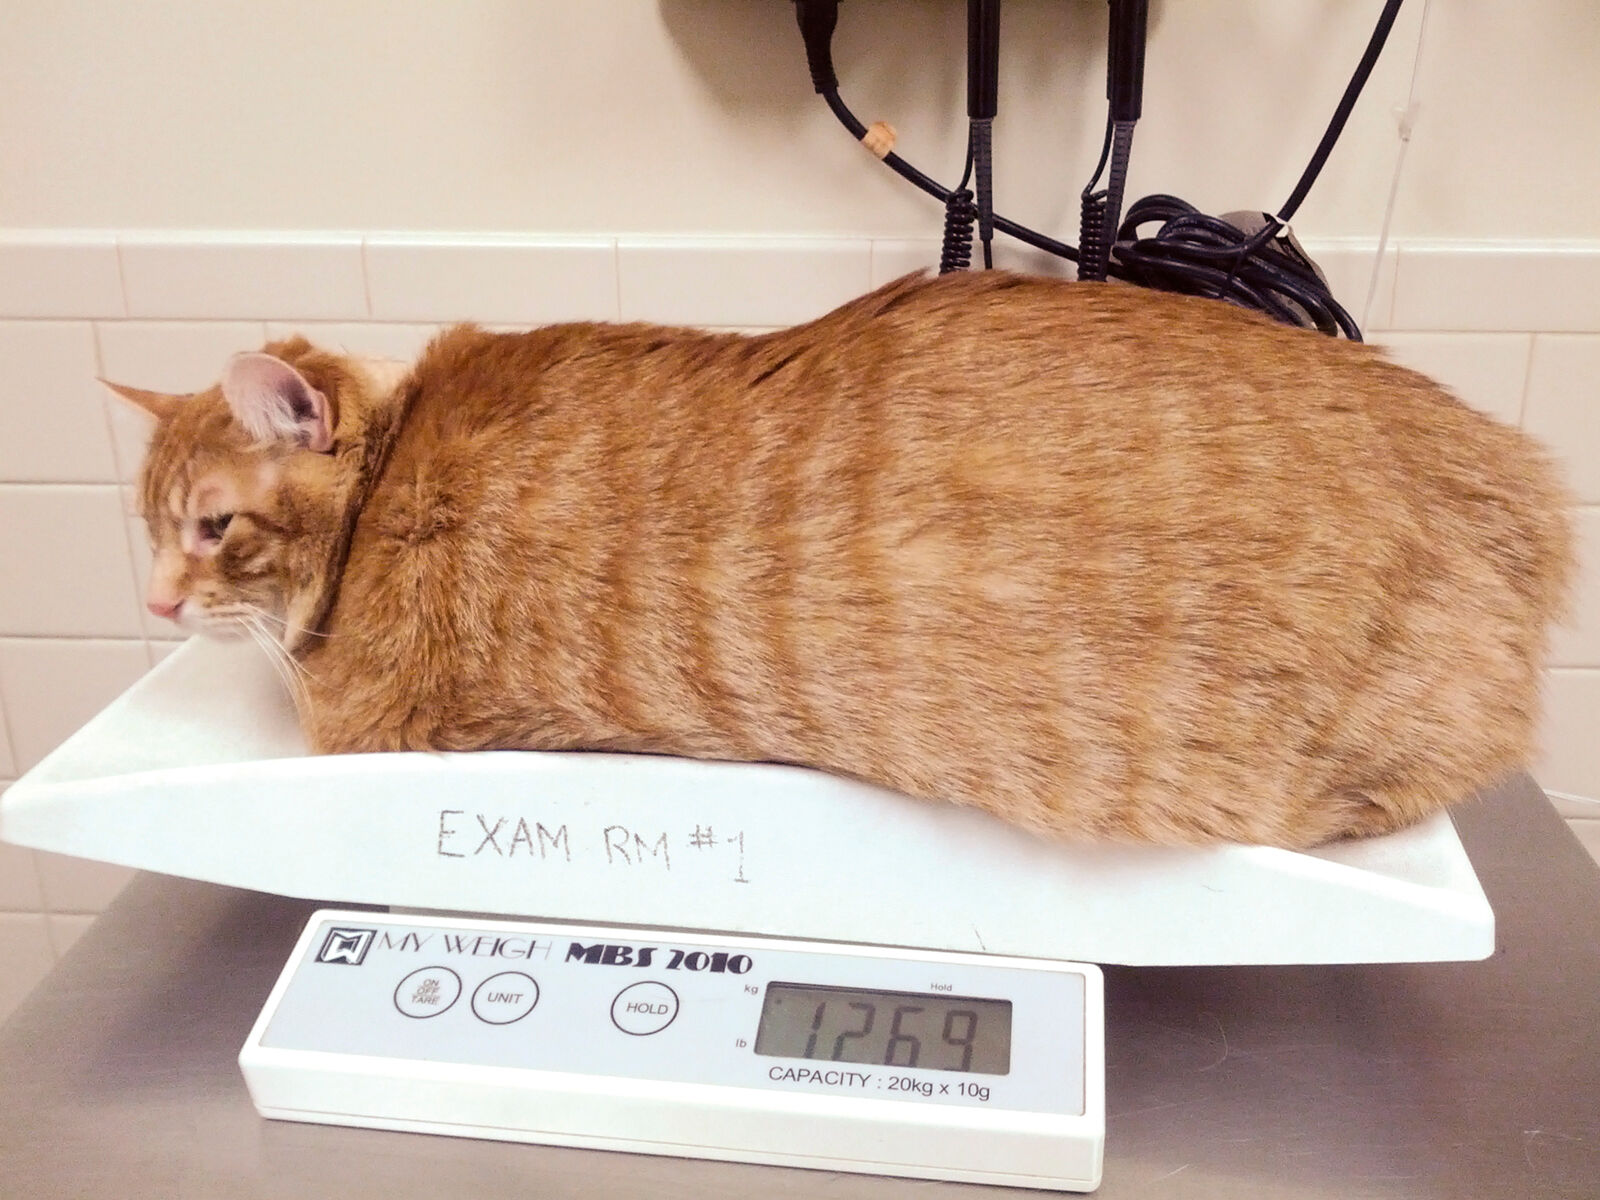 Quando si parla di obesità felina, la densità calorica è una preoccupazione molto maggiore rispetto al contenuto di carboidrati